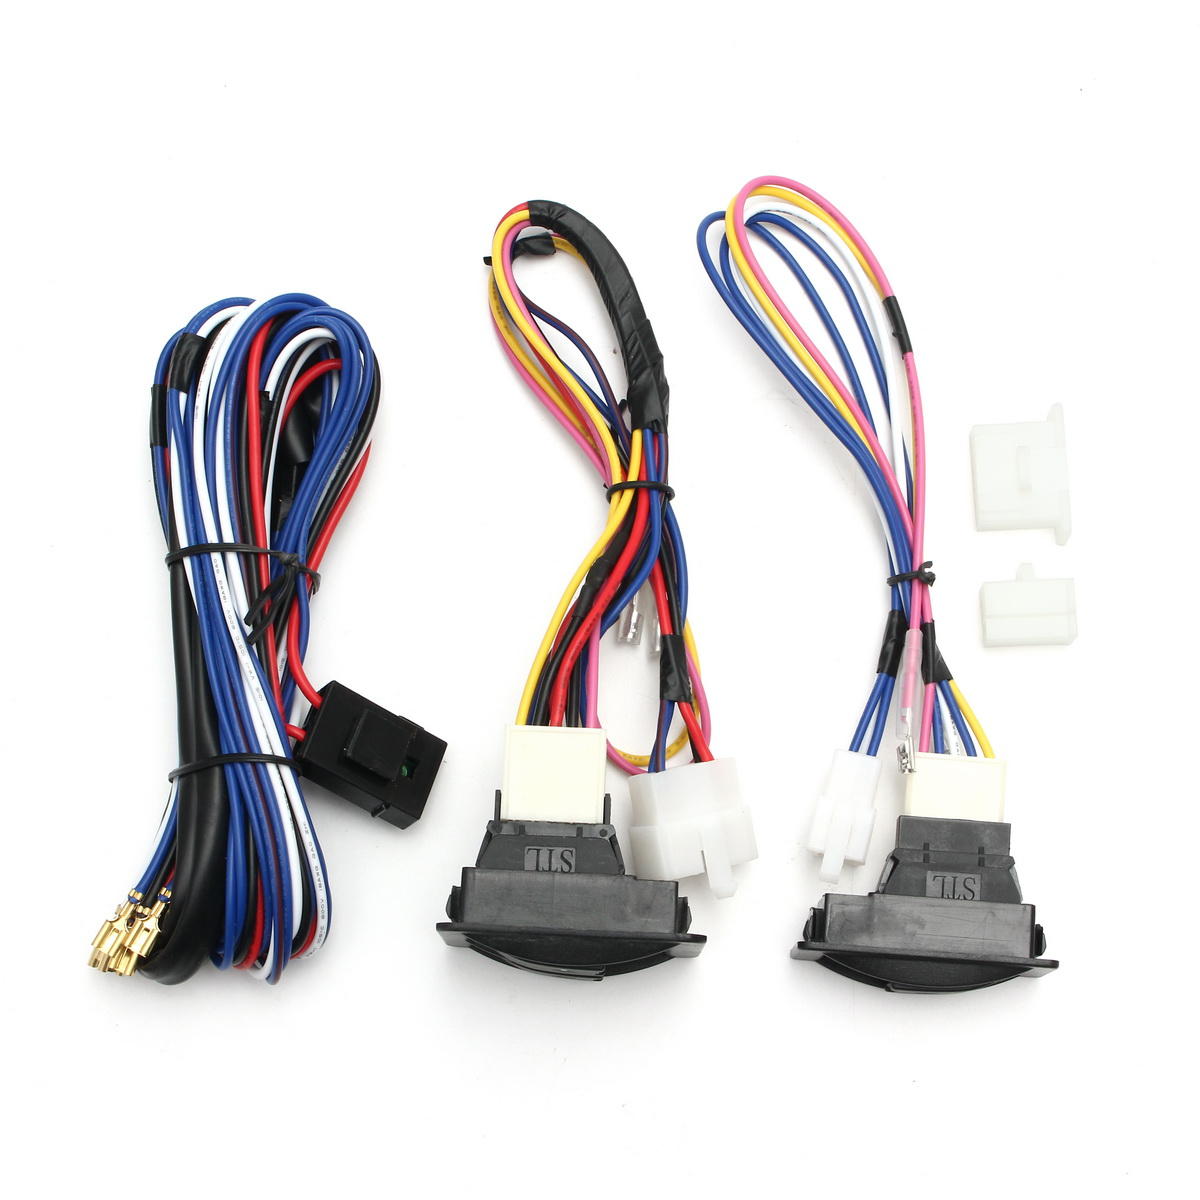 6Pcs 12V Universal Power Window Switch Kits con el arnés de cableado de instalación